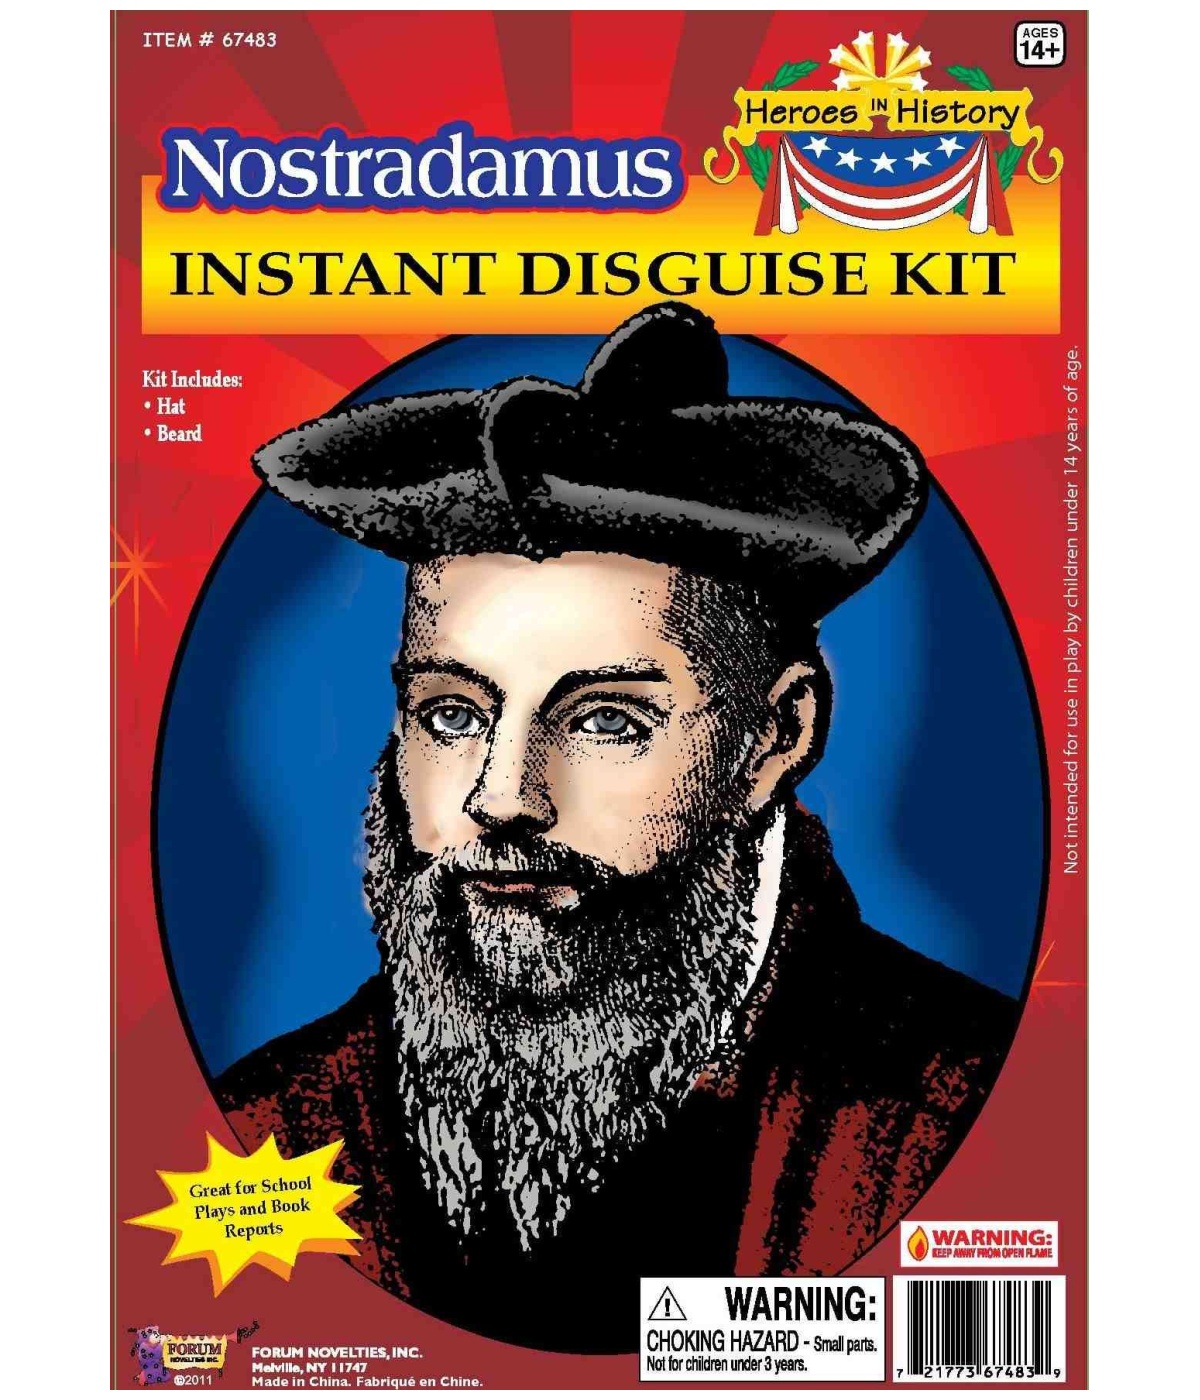  Nostradamus Kit